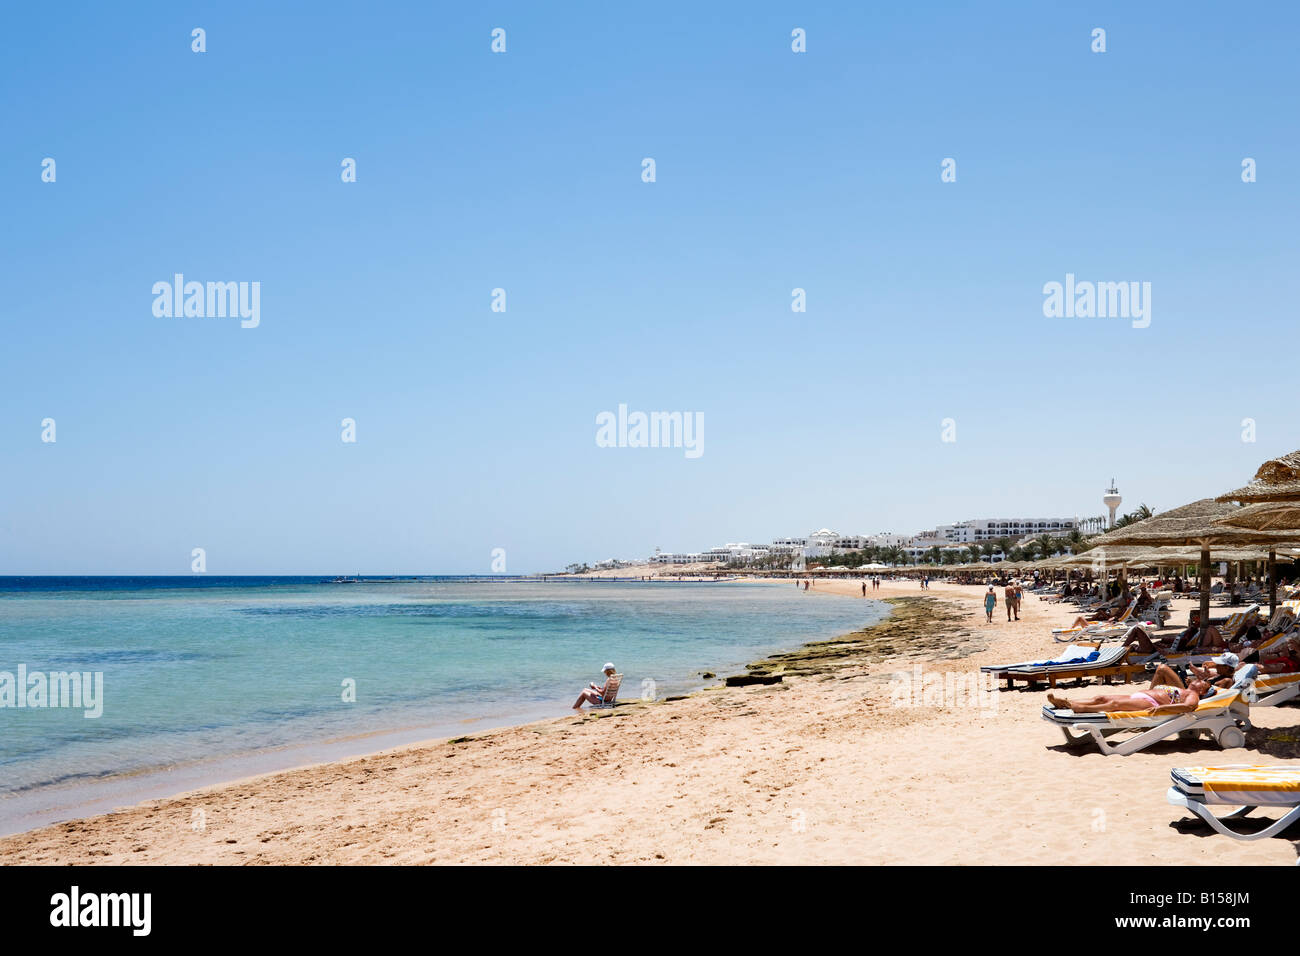 Beach outside Conrad Sharm el-Sheikh Resort, Ras Nosrani Bay, Sharm el-Sheikh, Red Sea Coast, South Sinai, Egypt Stock Photo